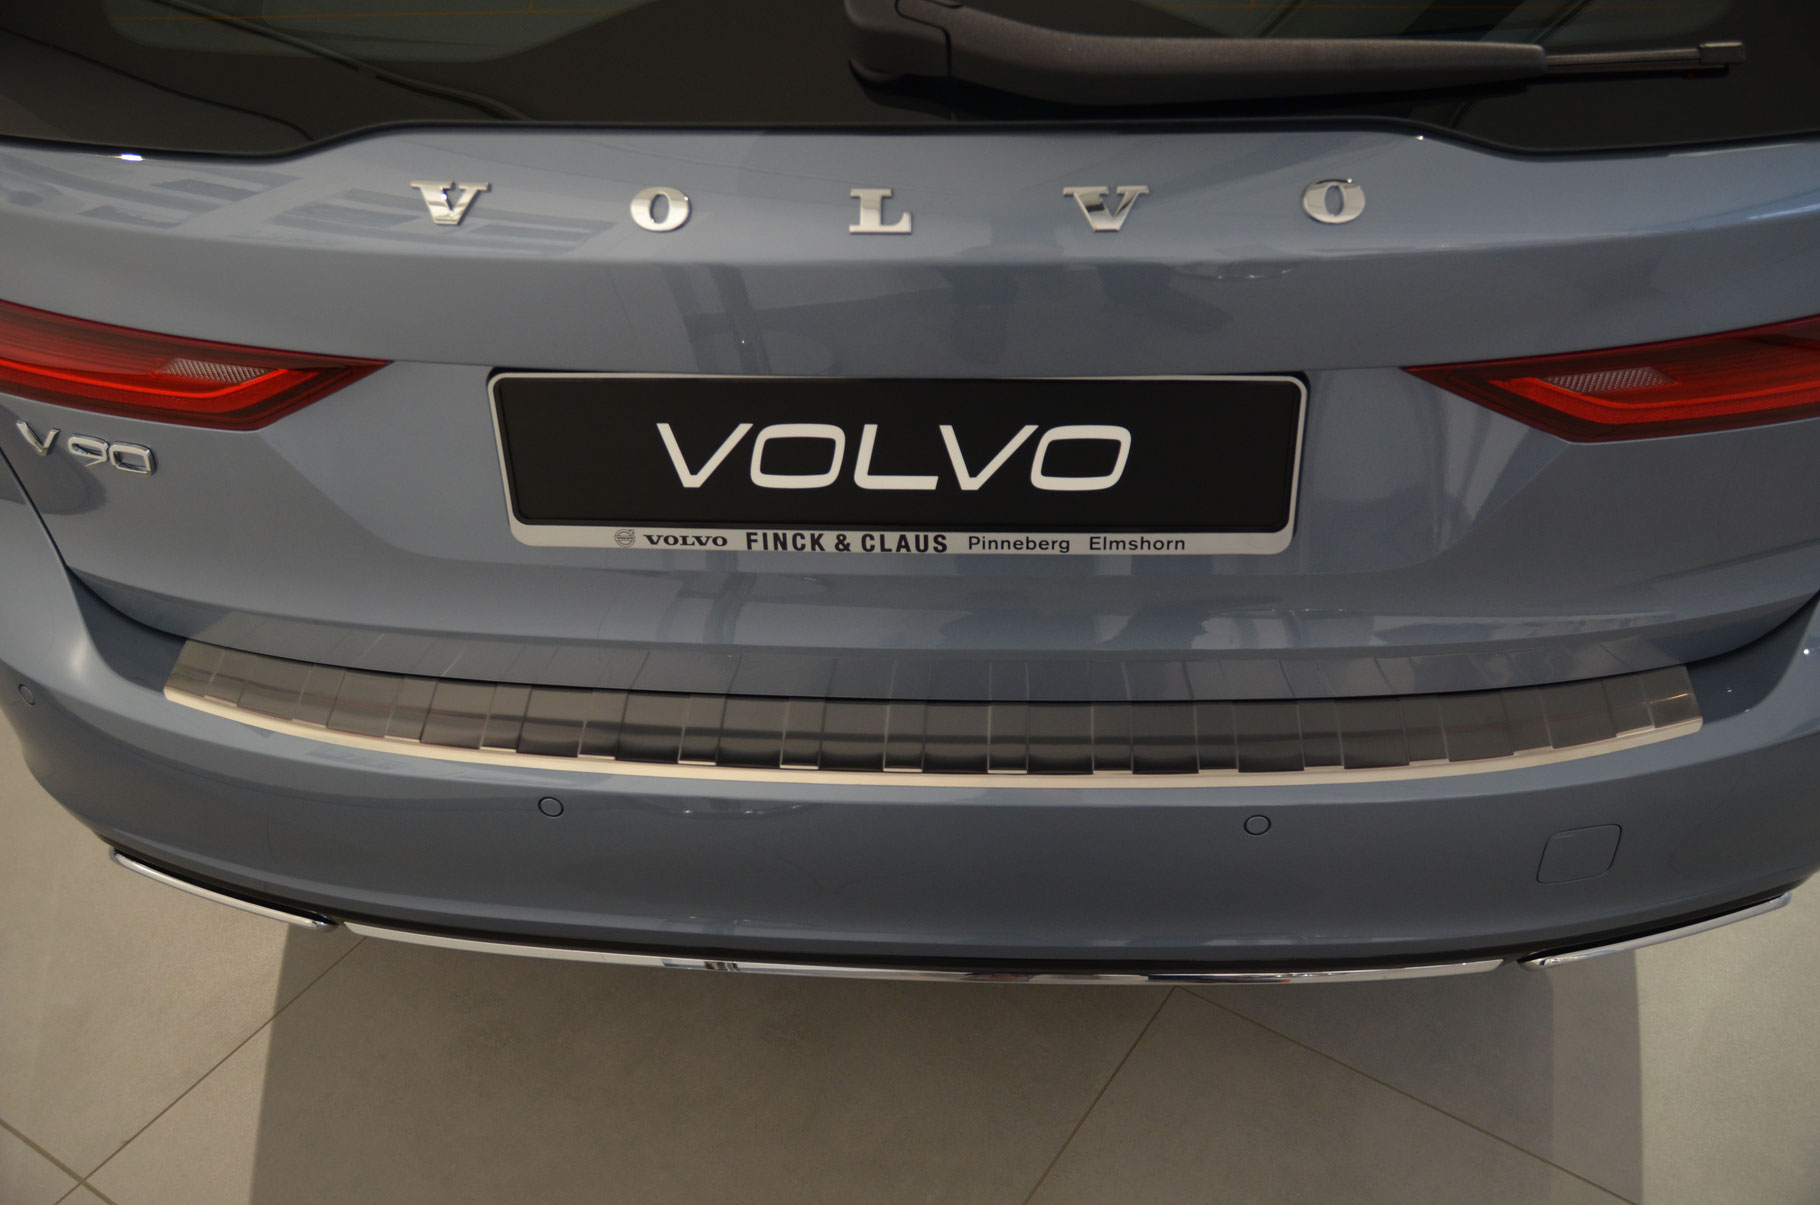 Vovlo V90 - Schutz für die Ladekante Ihres Fahrzeuges